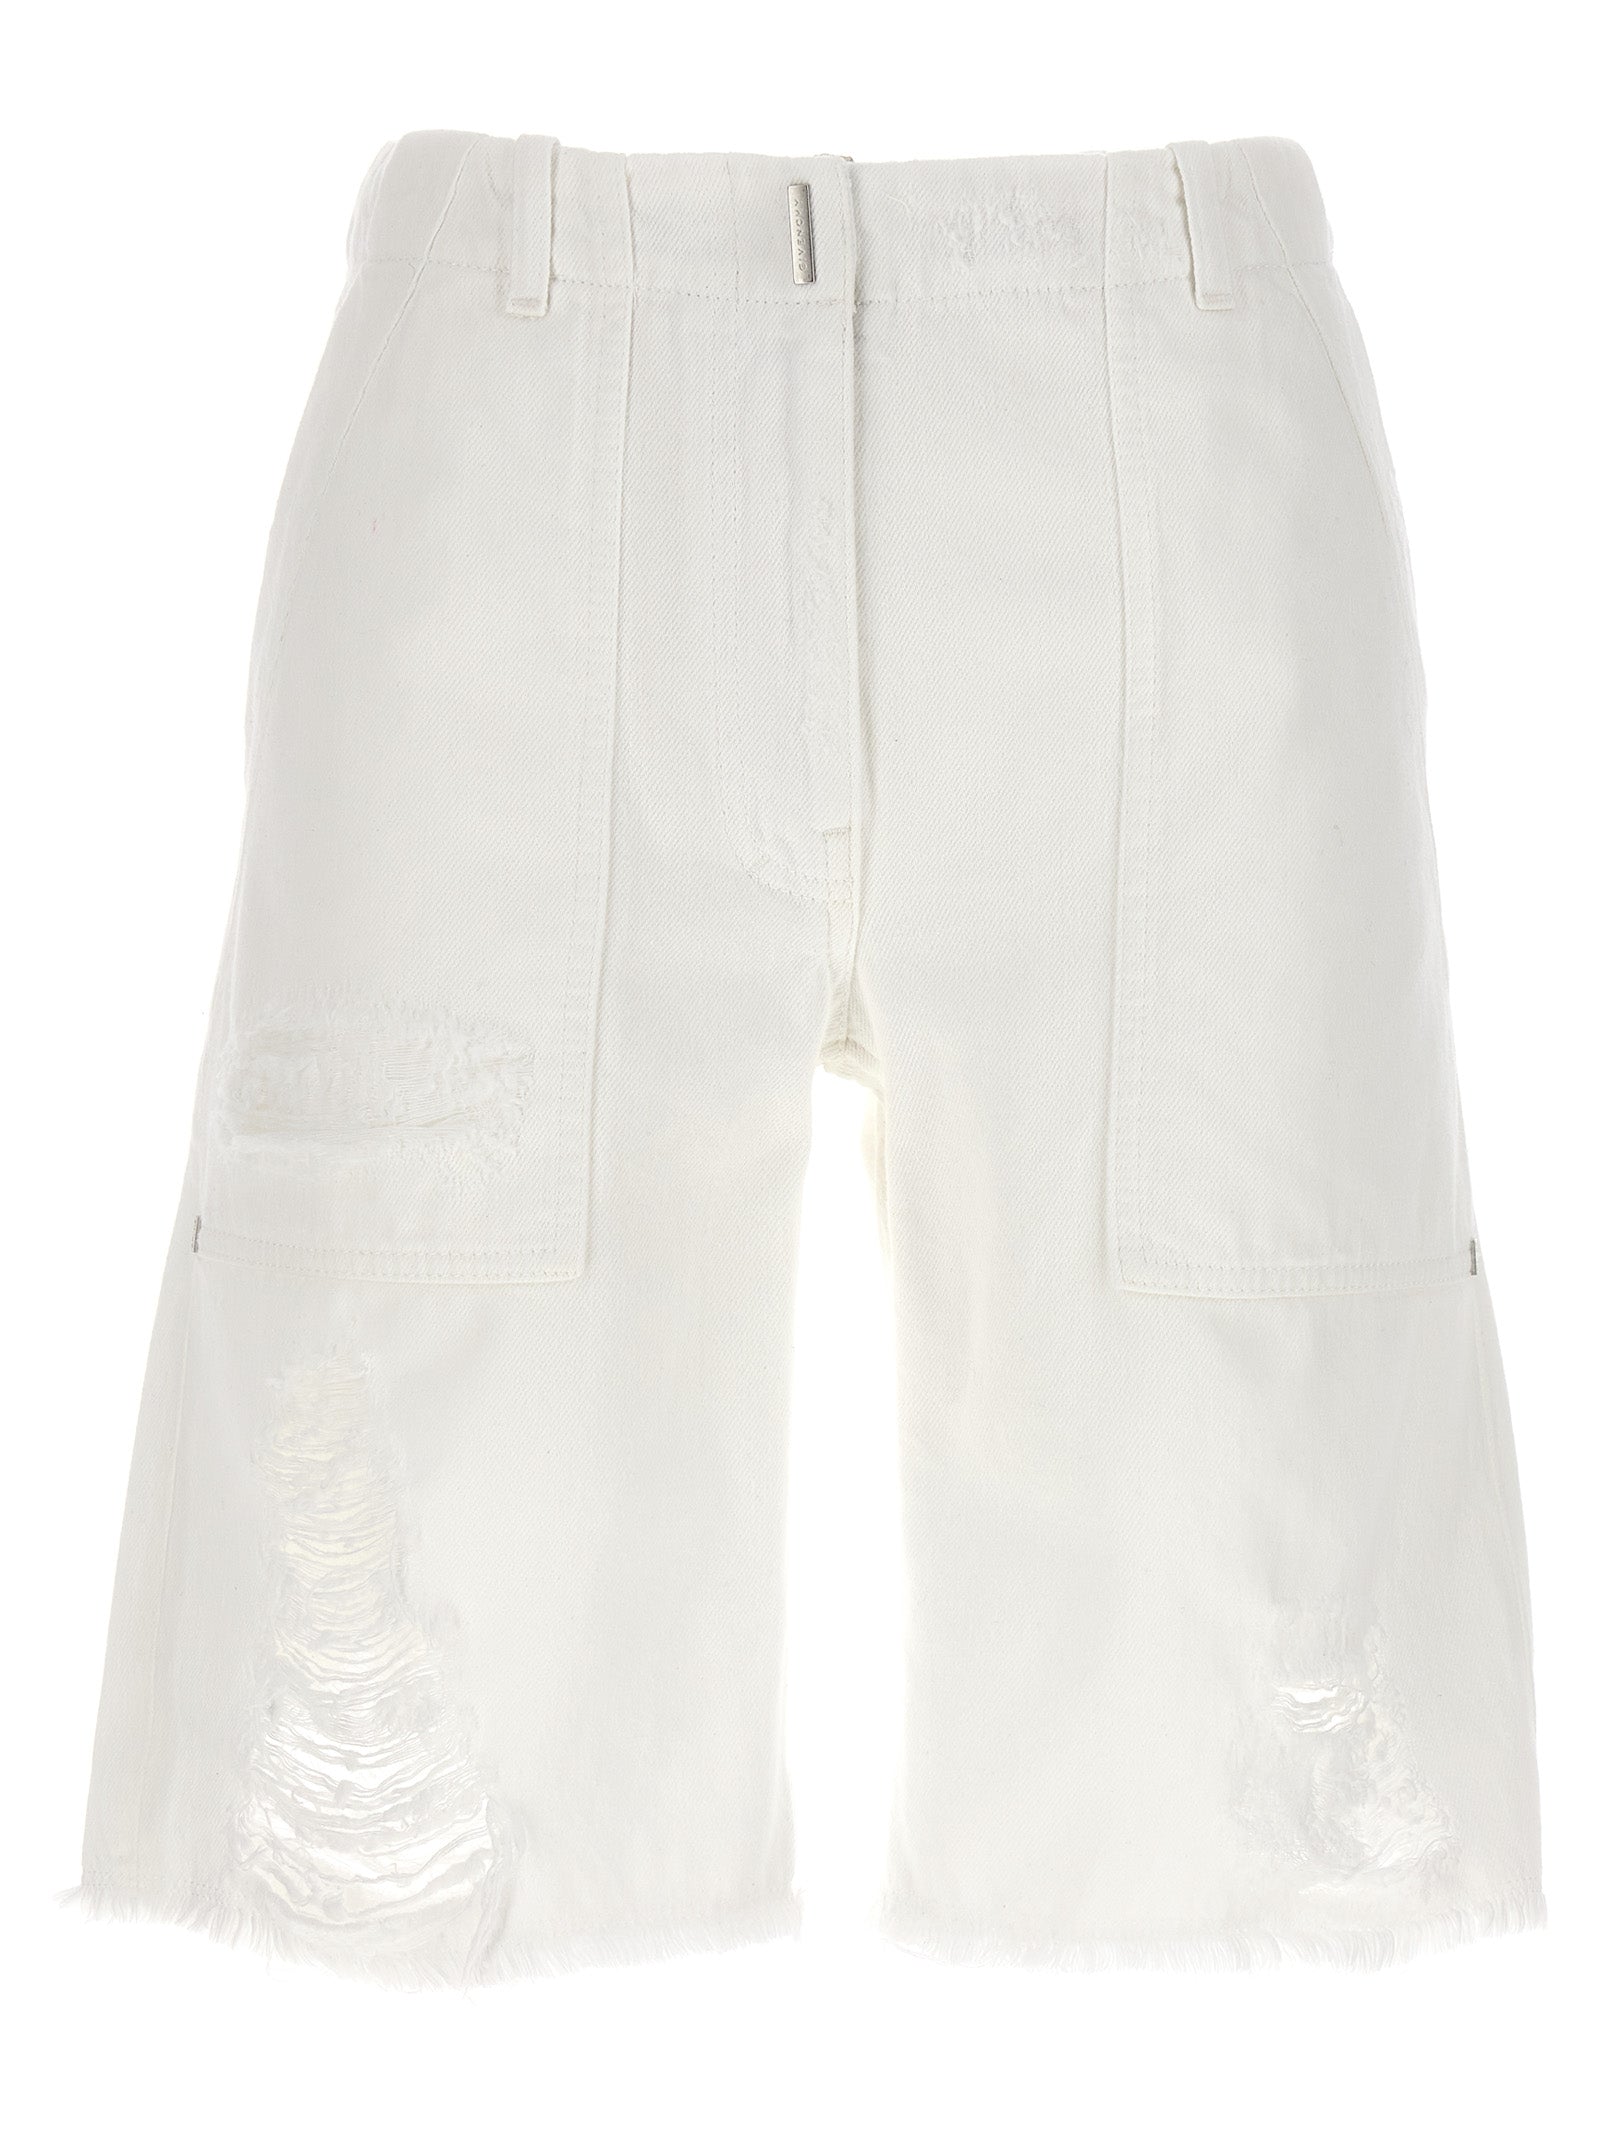 Givenchy Destroyed Denim Bermuda Shorts Bermuda, Short White